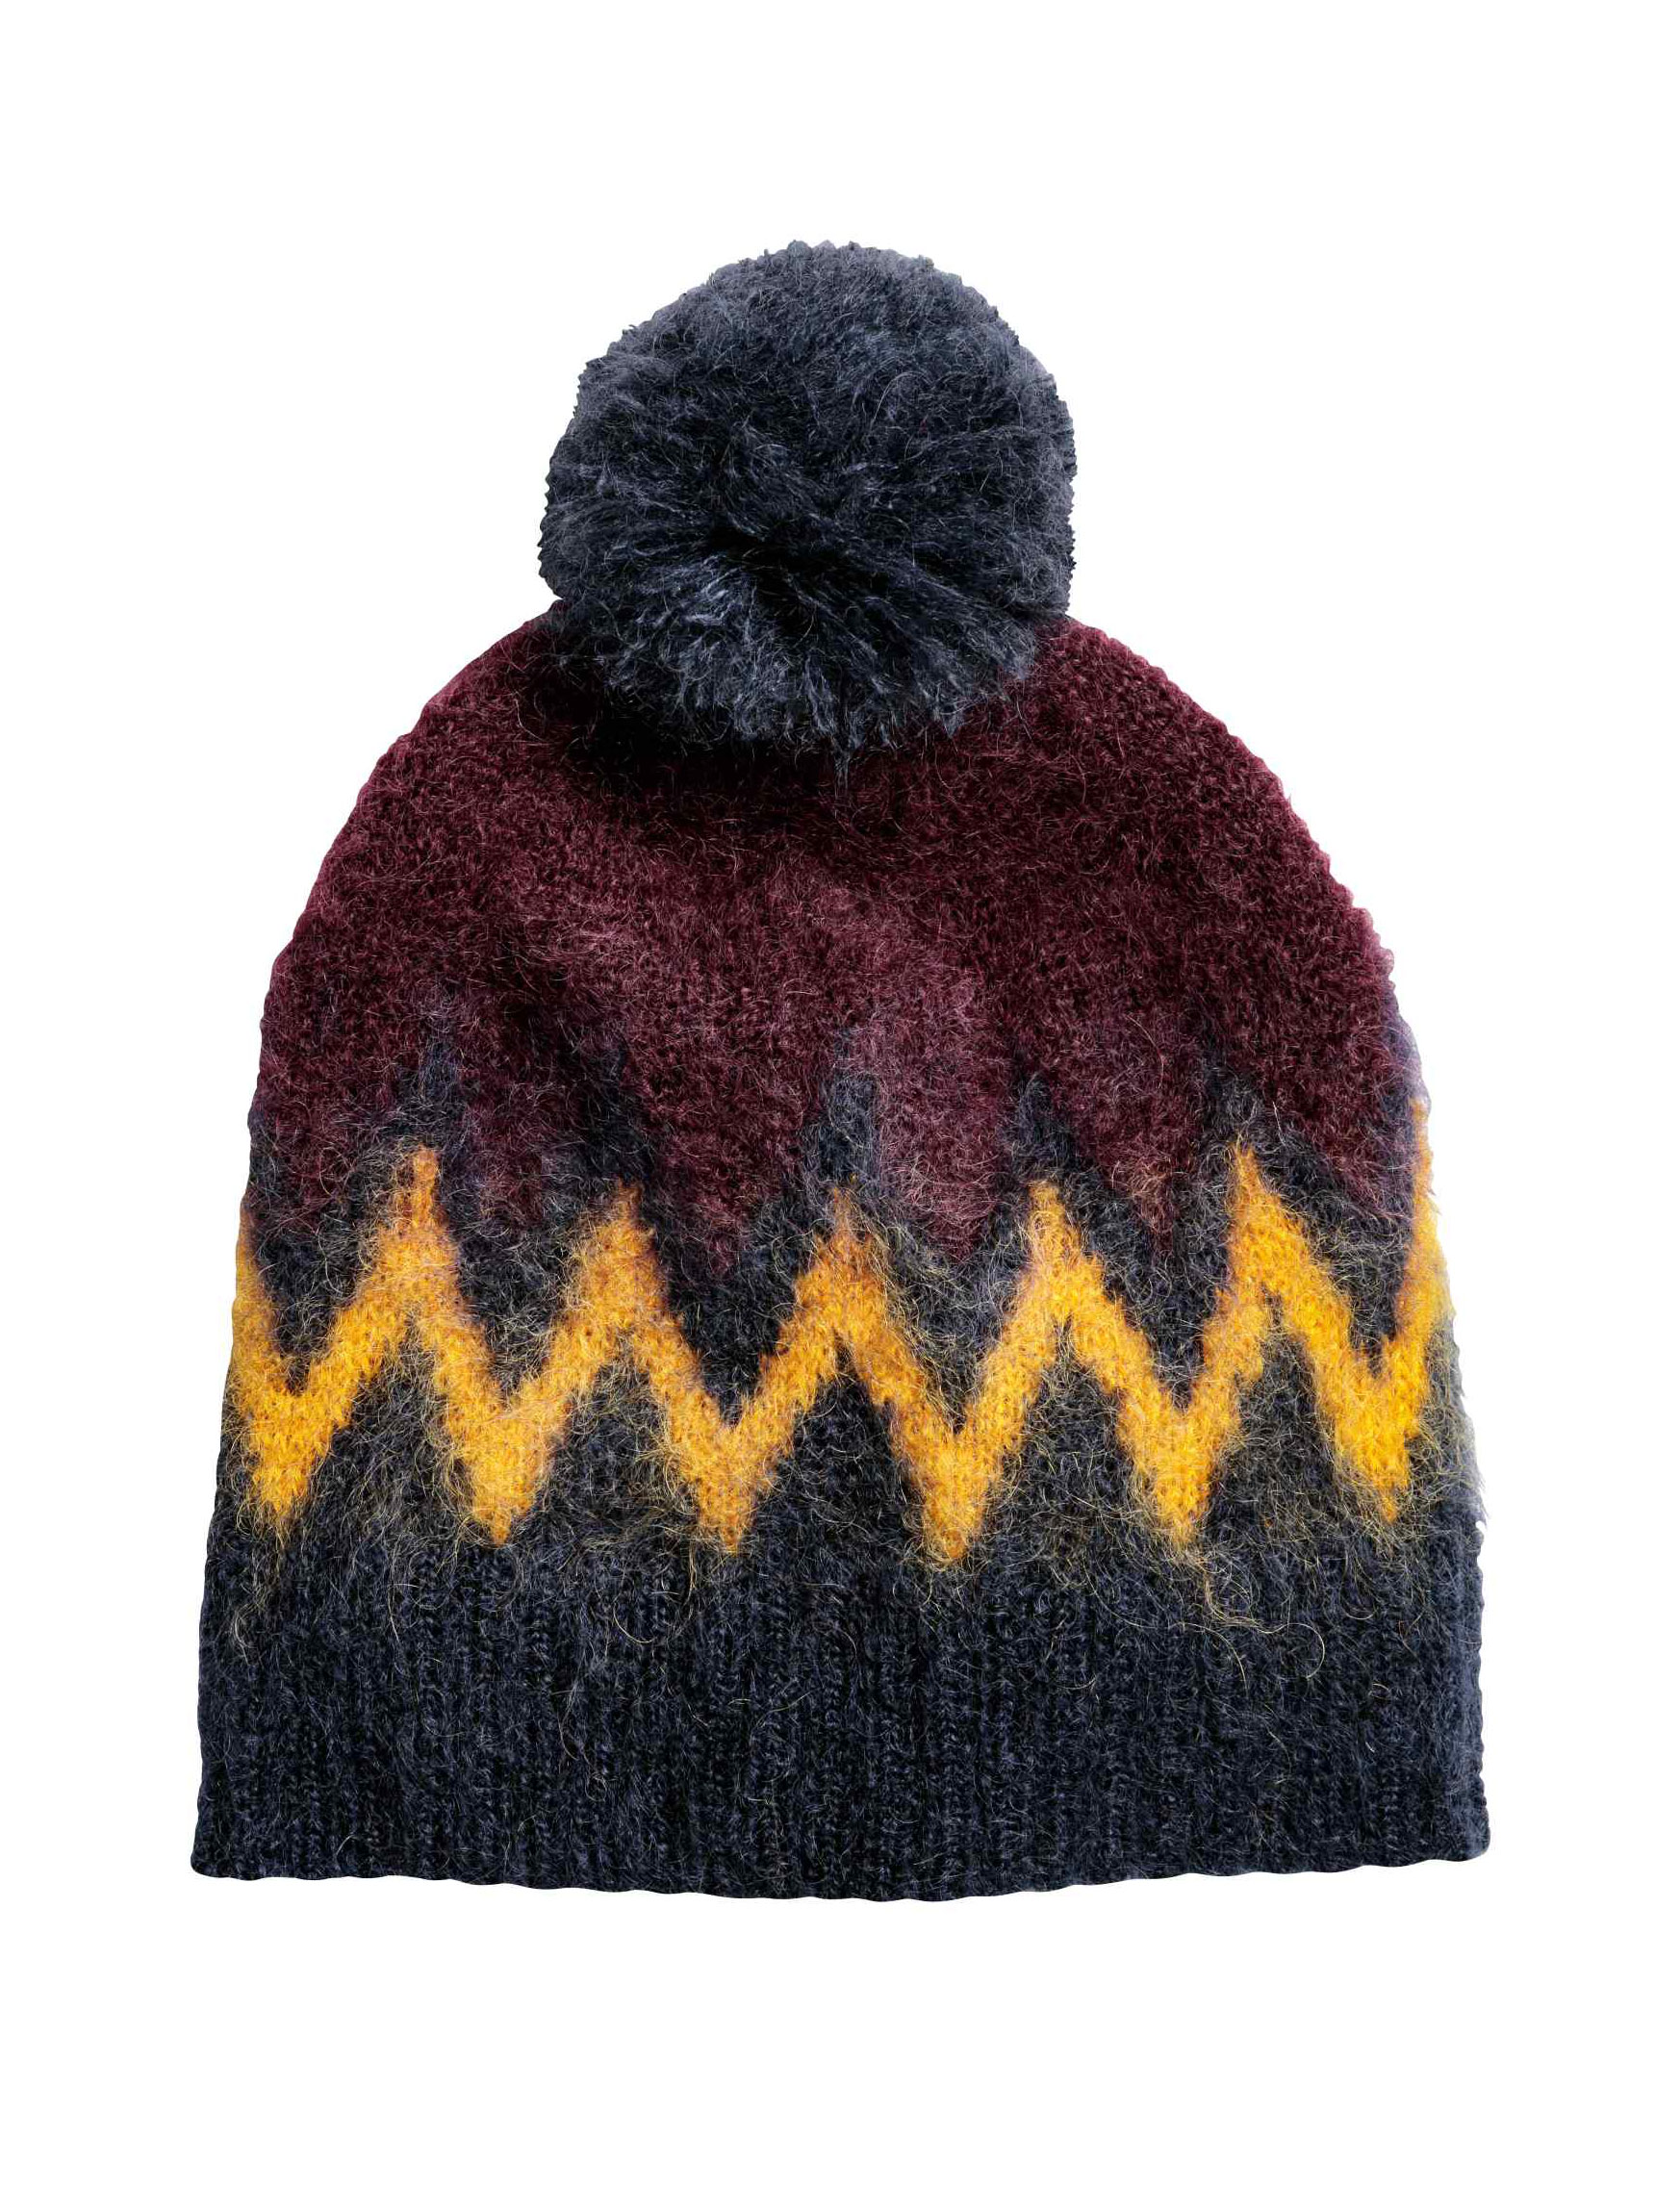 20 bonnets tendance pour être au chaud cet hiver - Femme Actuelle